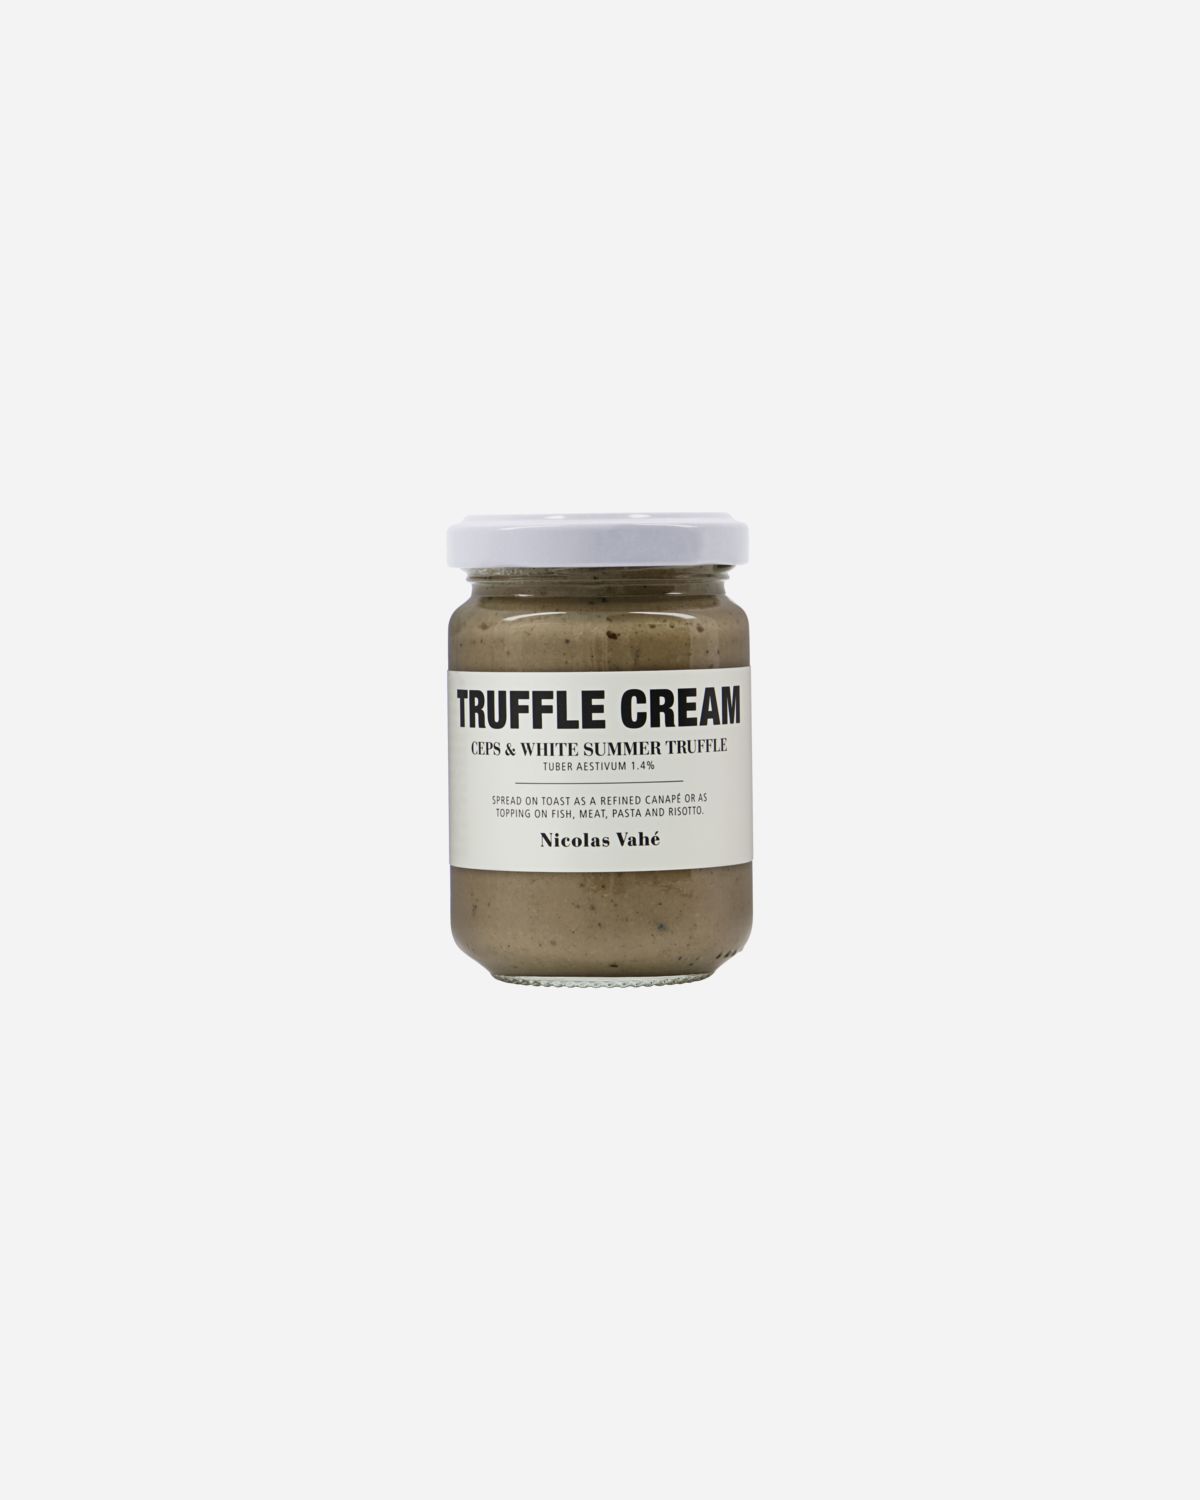 Truffle Cream, Ceps & White Summer Truffle, 140 g.